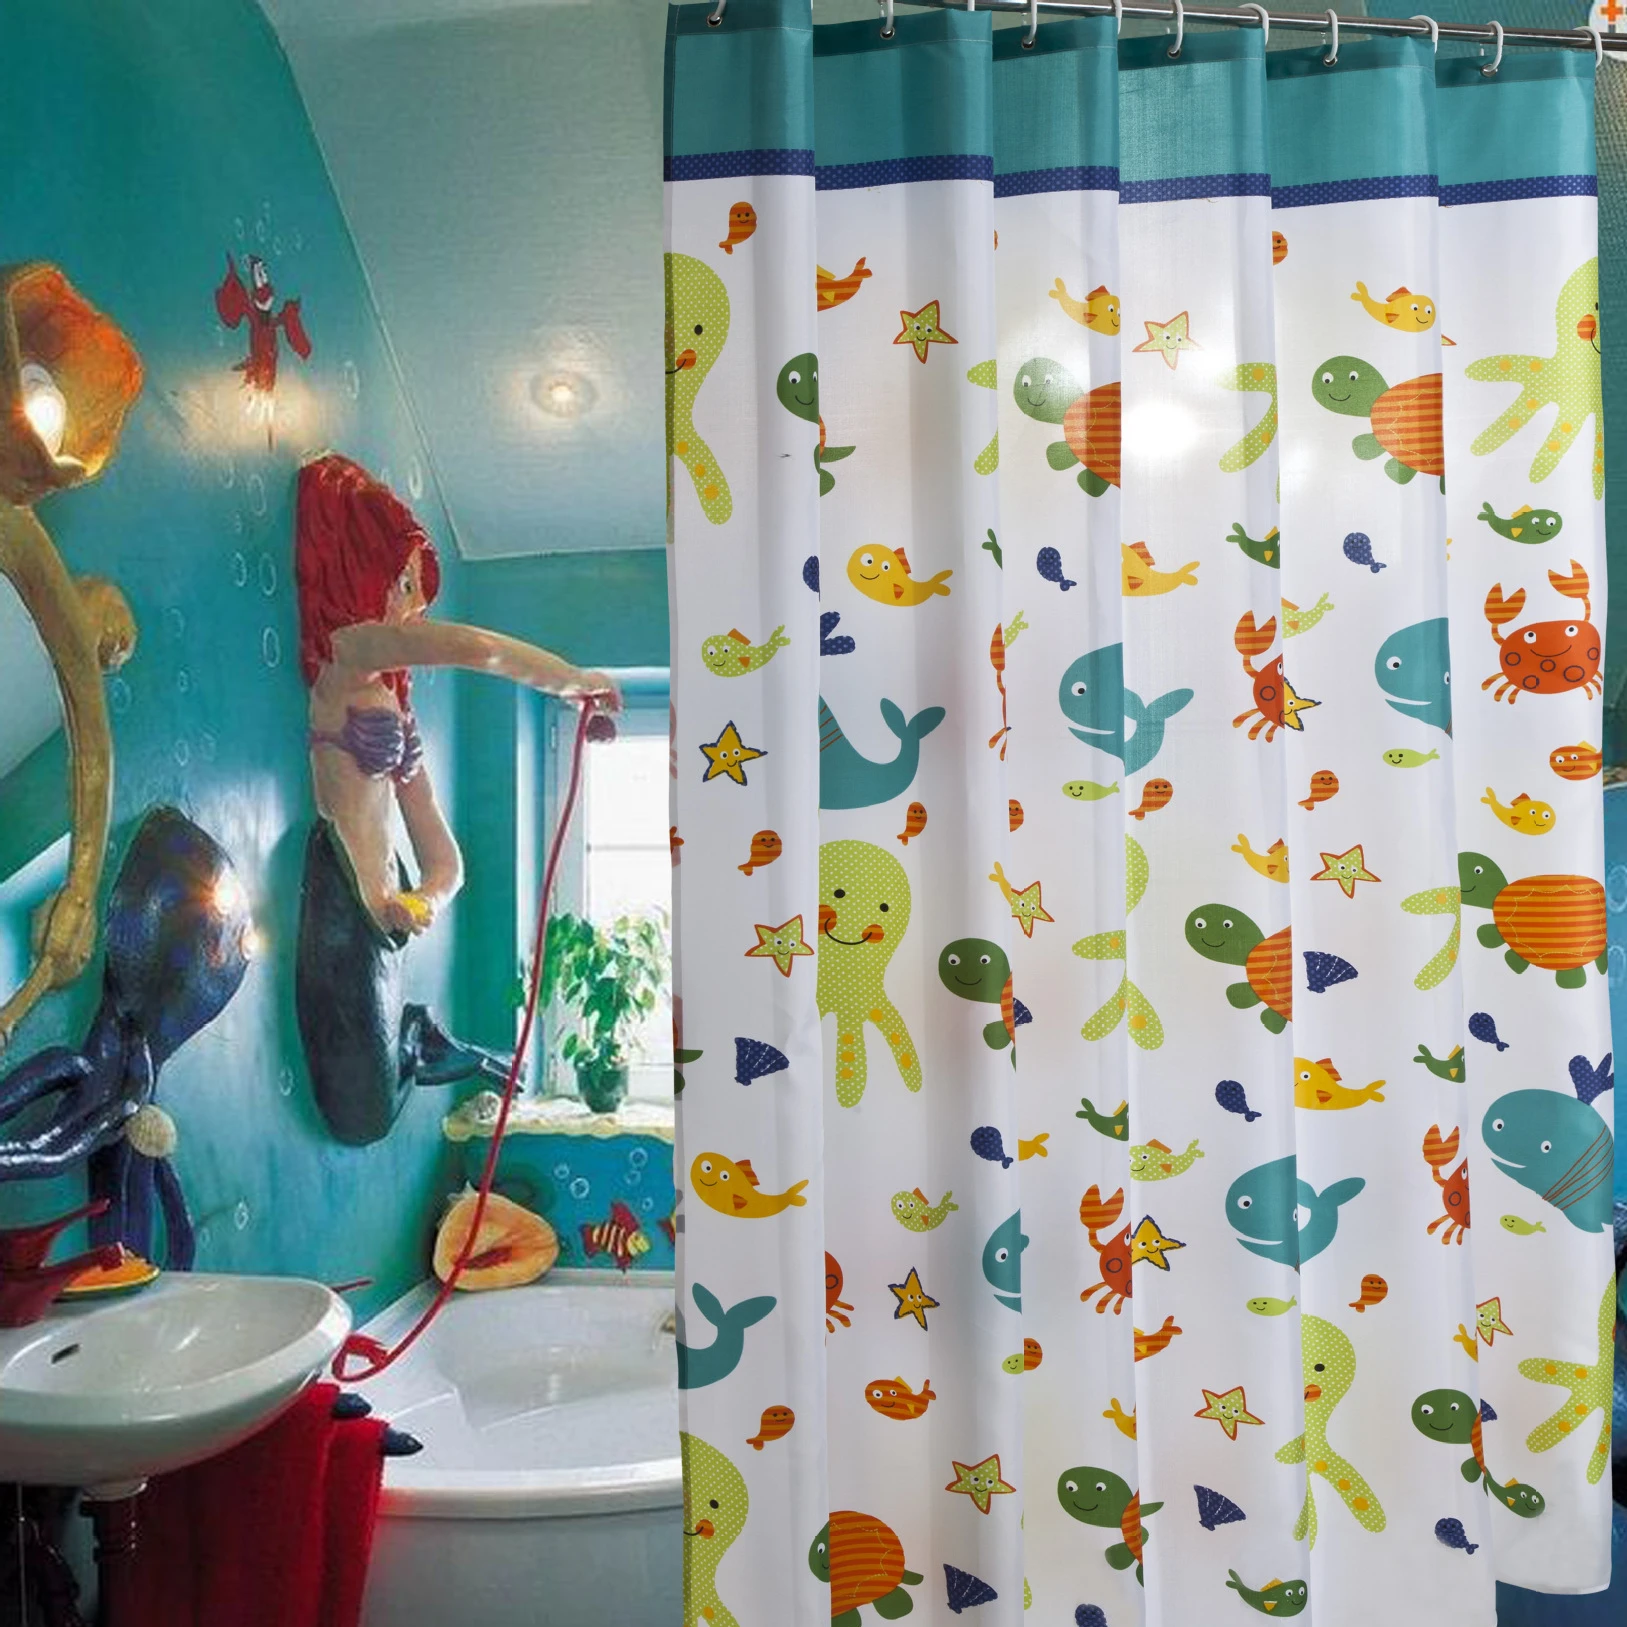 

Водонепроницаемая занавеска для ванной, детская утолщенная занавеска из полиэстера, с рисунком рыбы, Кита, черепахи, с крючками